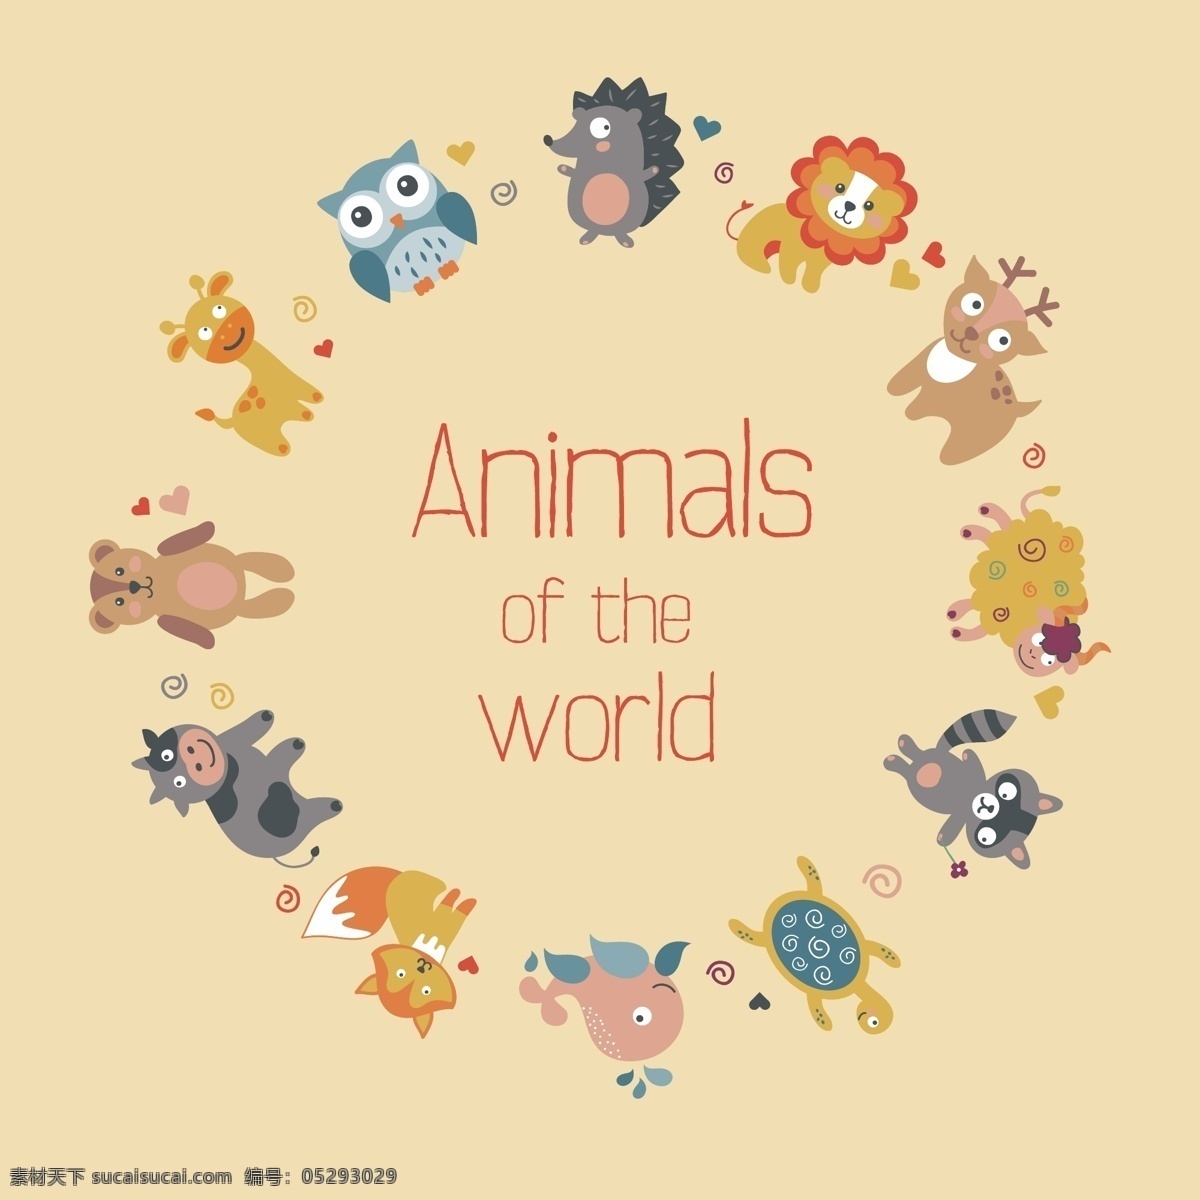 各个 种类 动物 围 成 圈 卡通 圆环 logo模板 动物园 logo animals